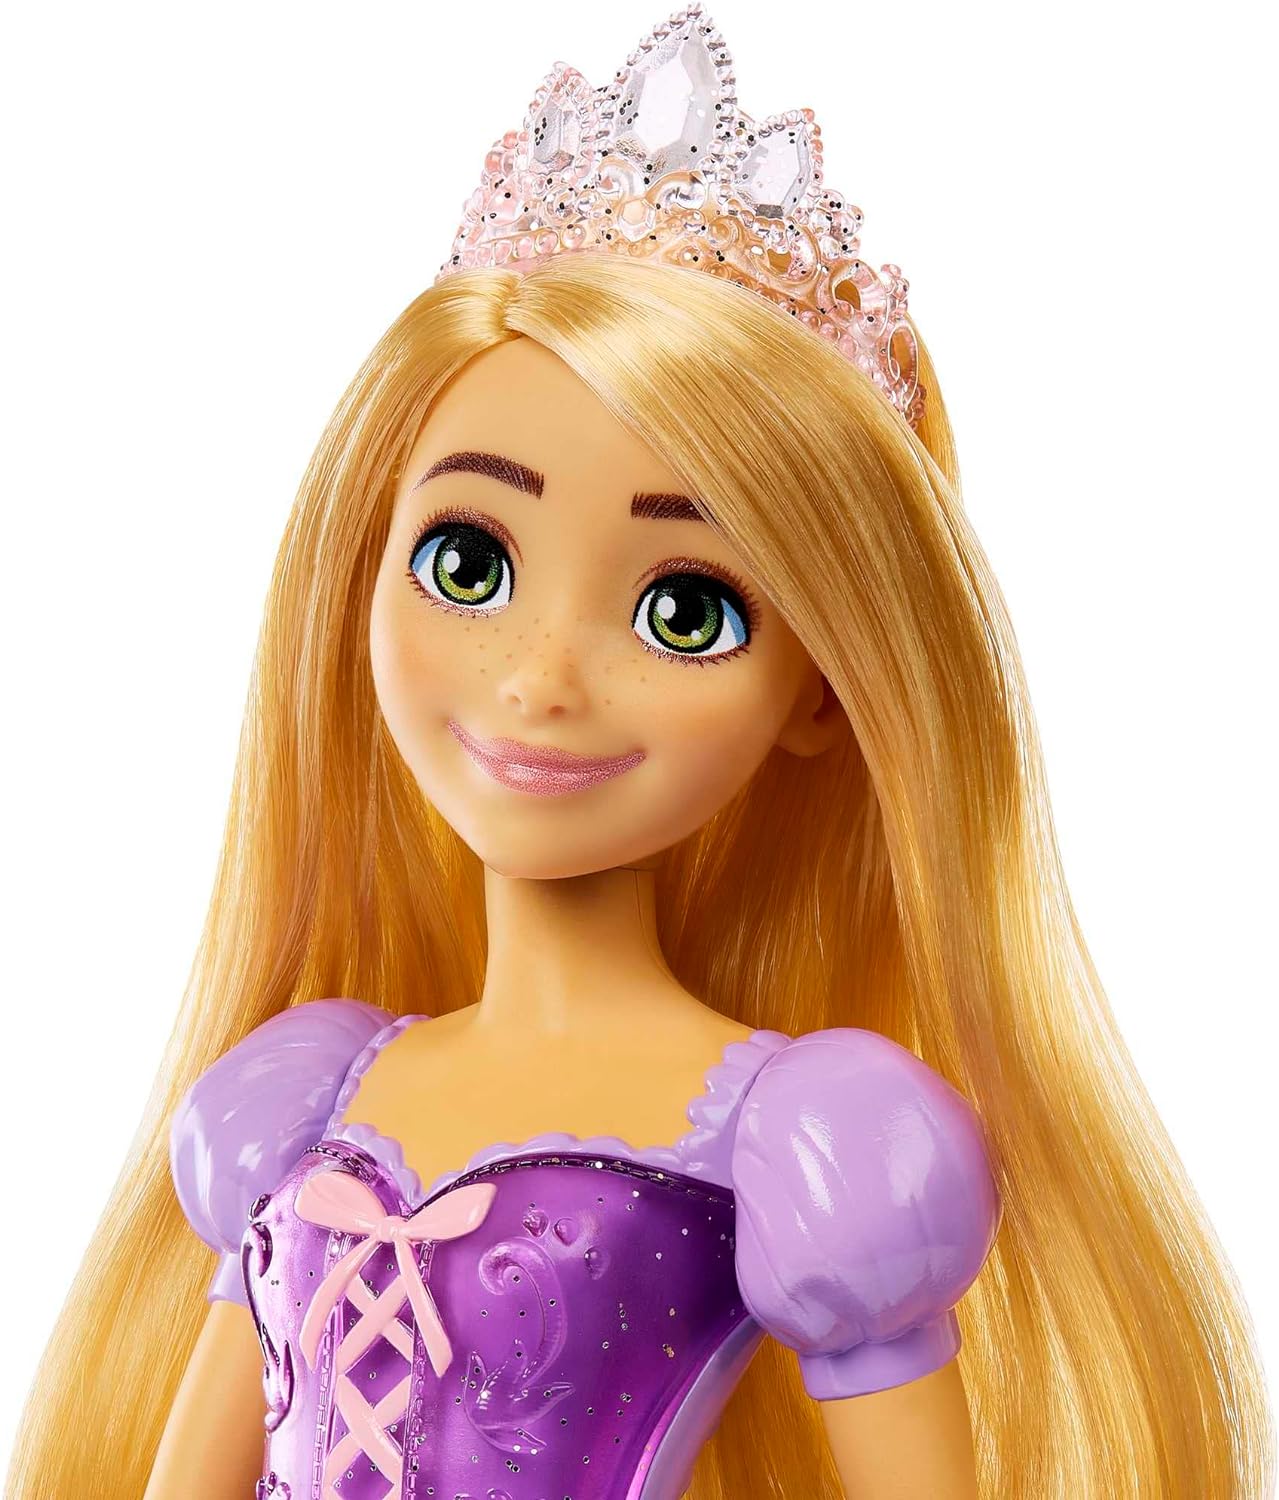 Bambola di Rapunzel con vestiti scintillanti